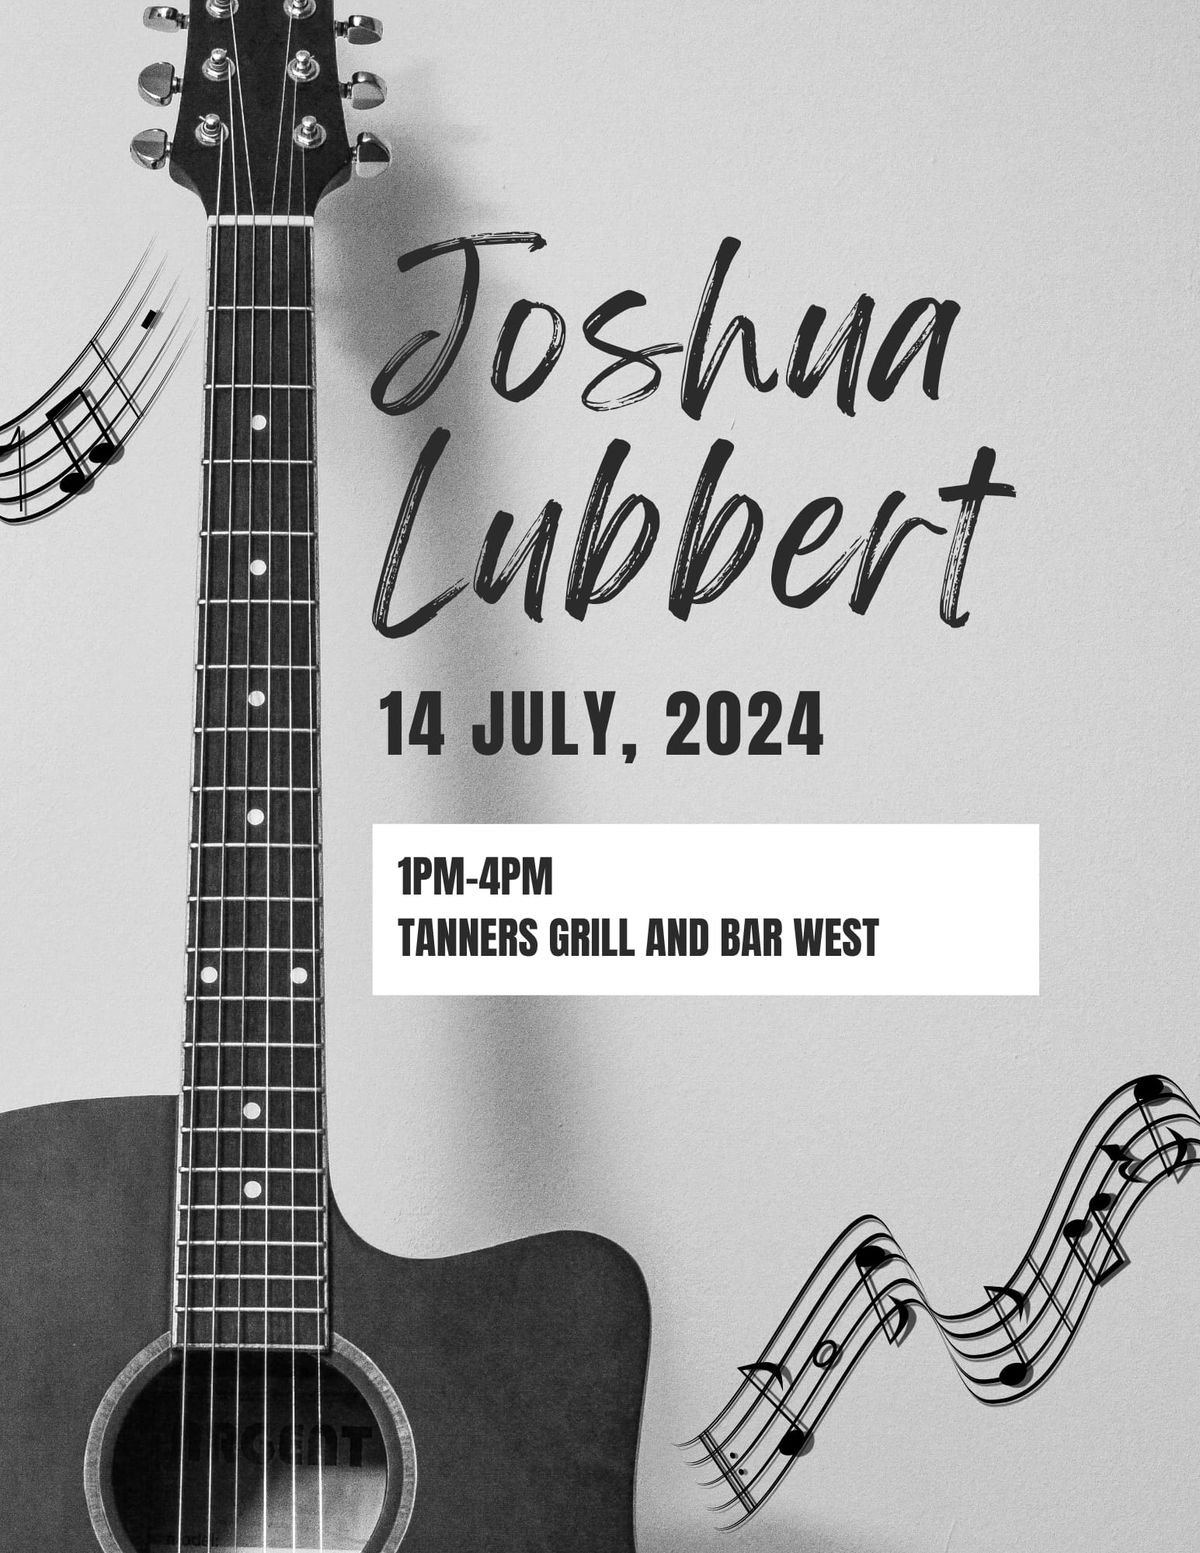 Joshua Lubbert Live Acoustic 